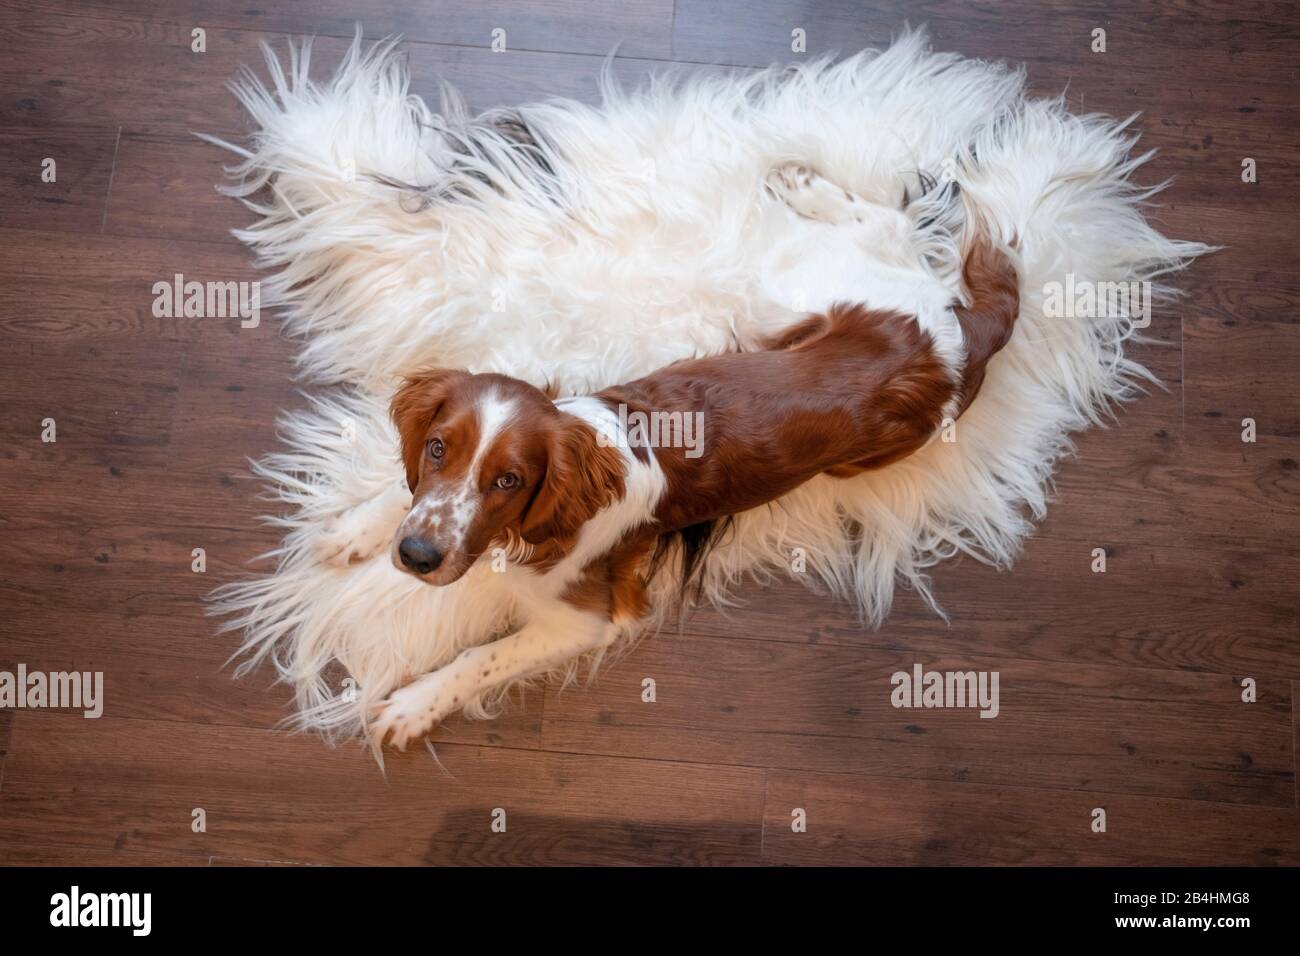 Hund, Irish red and white setter liegt auf Schafsfell und schaut mit Hundeblick in die Kamera Stock Photo